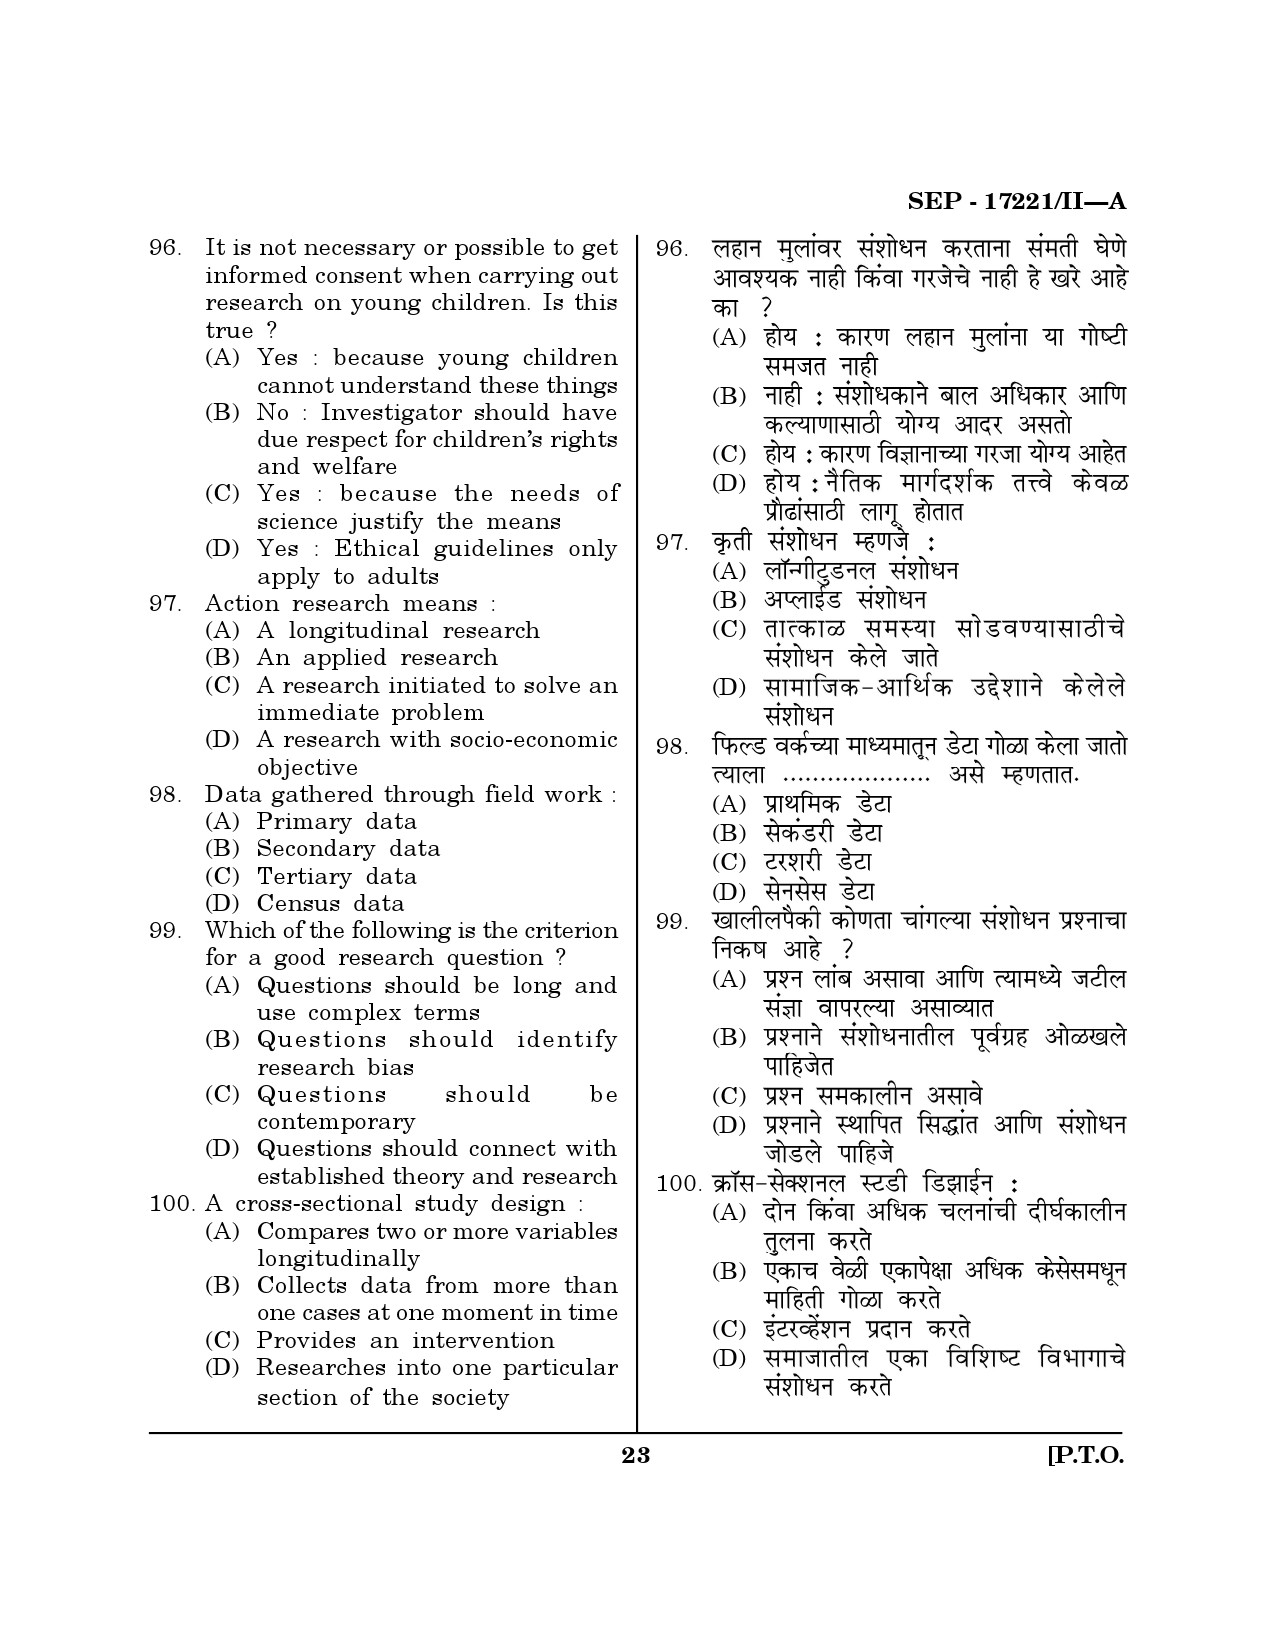 Maharashtra SET Home Science Exam Question Paper September 2021 22